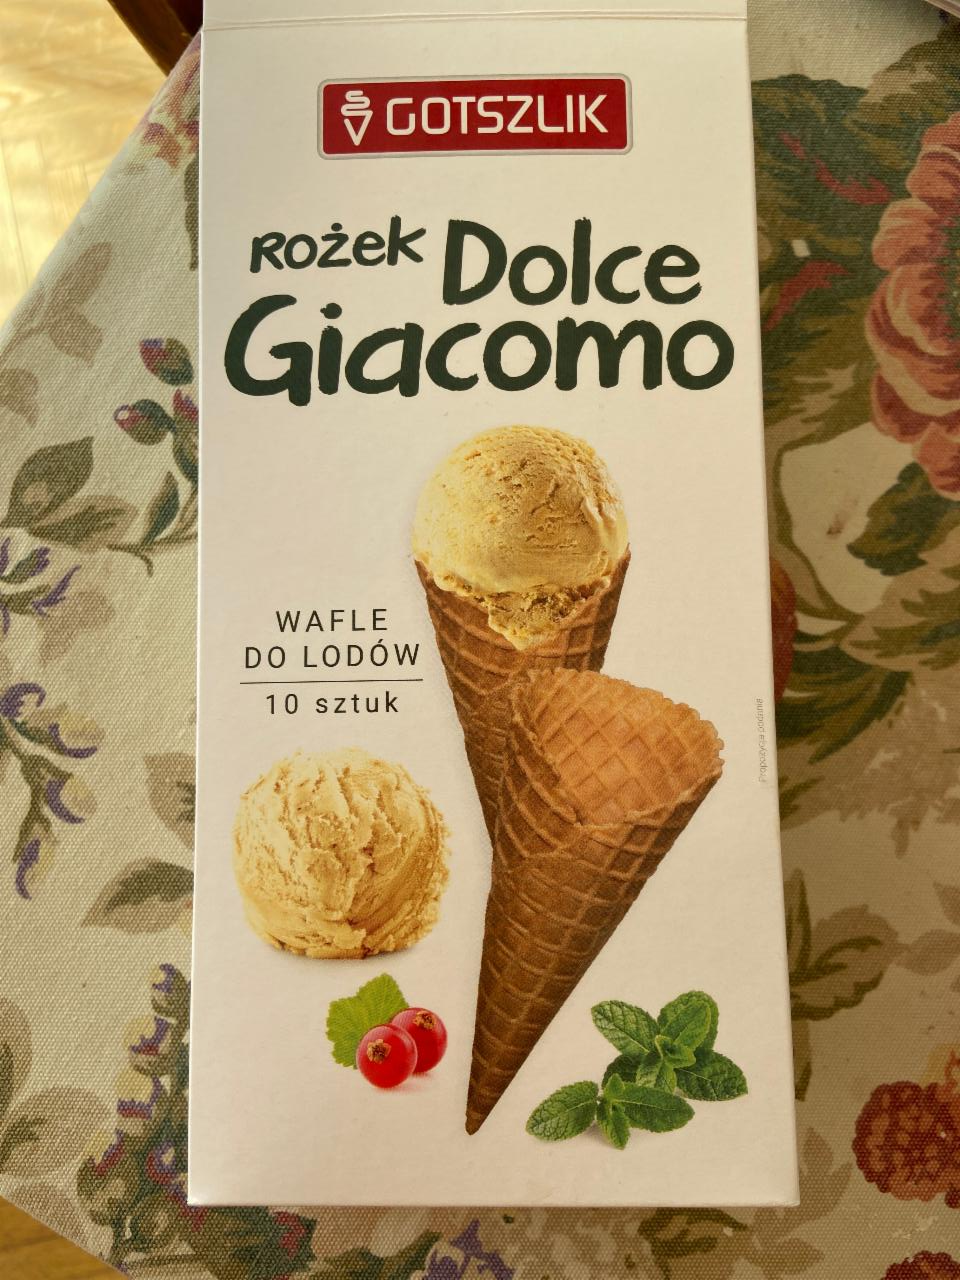 Фото - Рожок для мороженого Dolce Giacomo Gotszlik